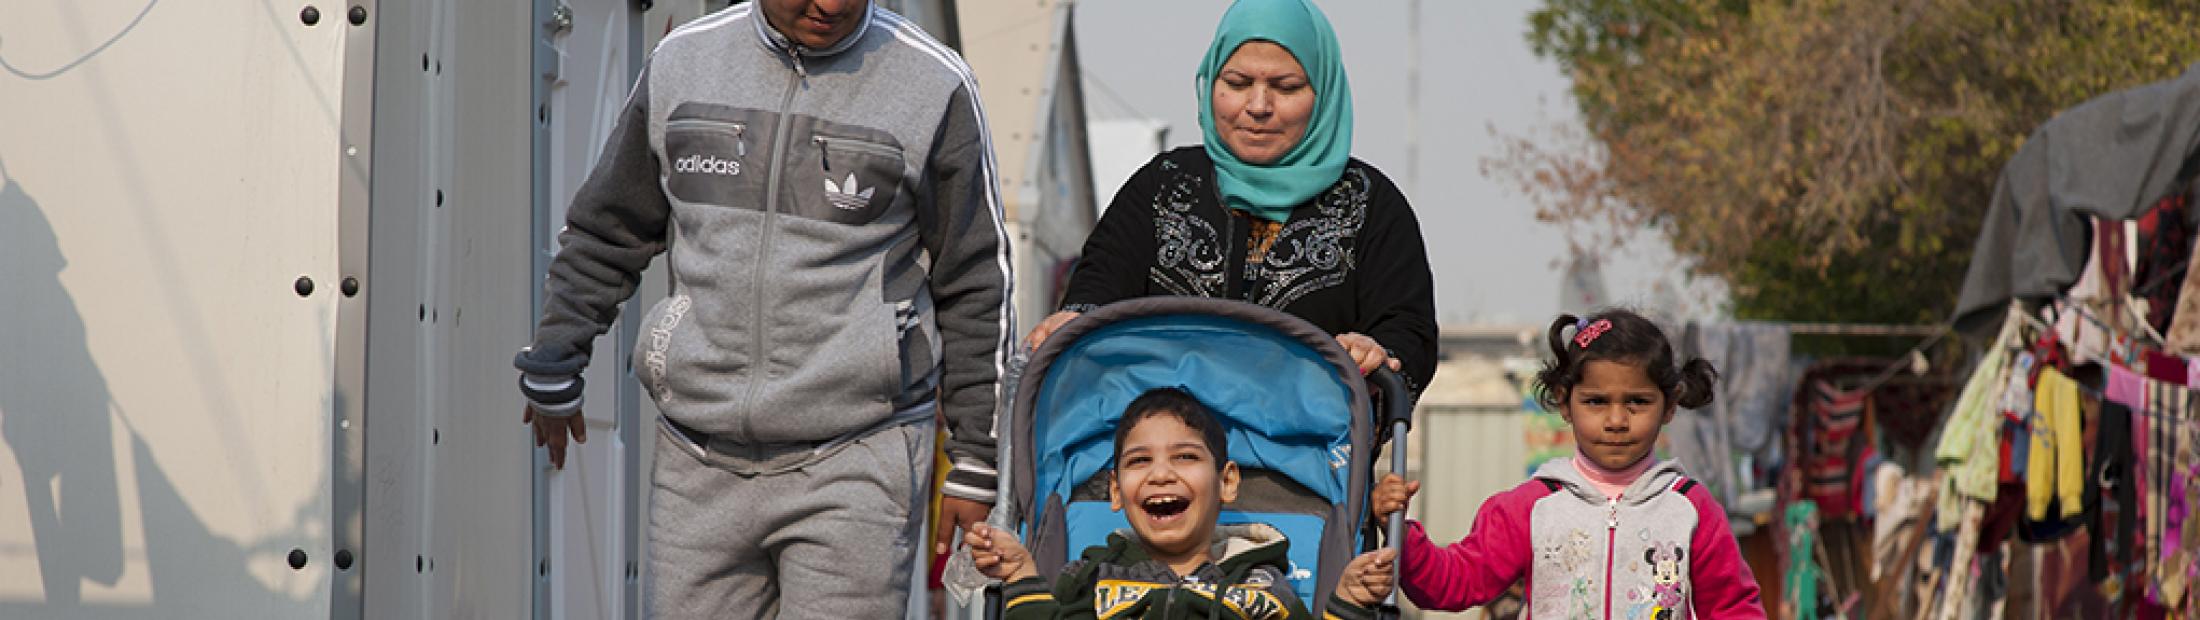  3 historias de personas con discapacidad: desplazados y refugiados en Irak